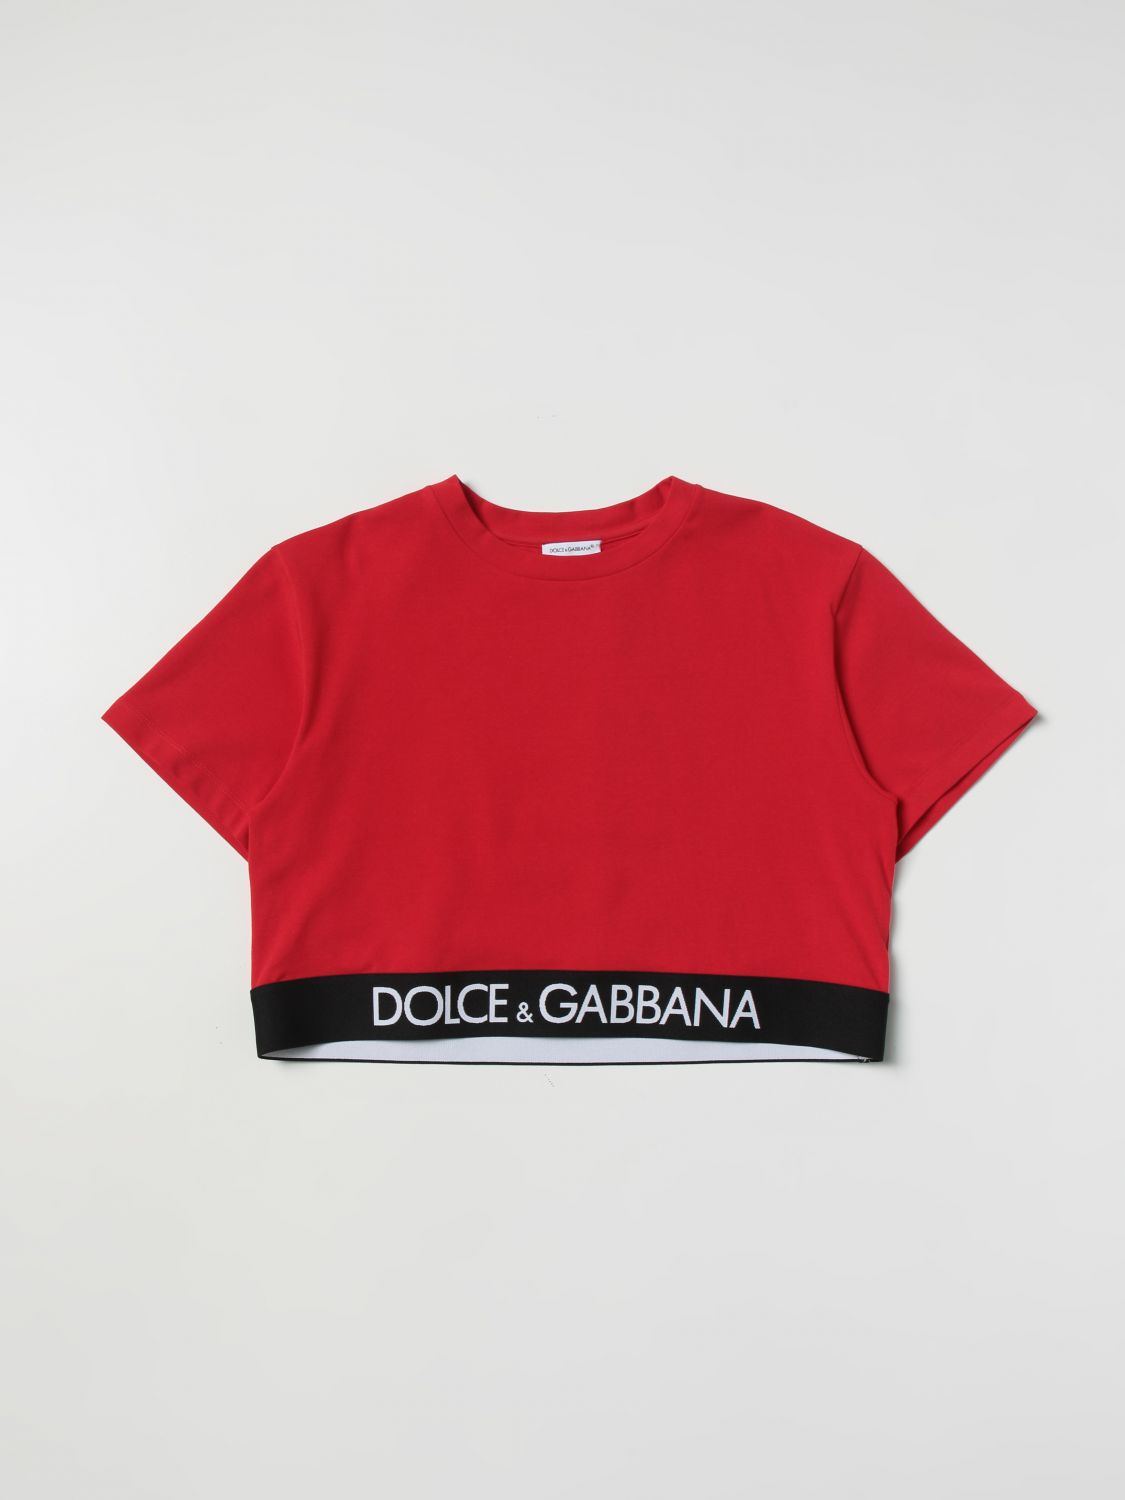 DOLCE & GABBANA: t-shirt for girls - Red | Dolce & Gabbana t-shirt  L5JTHRG7E3K online on 